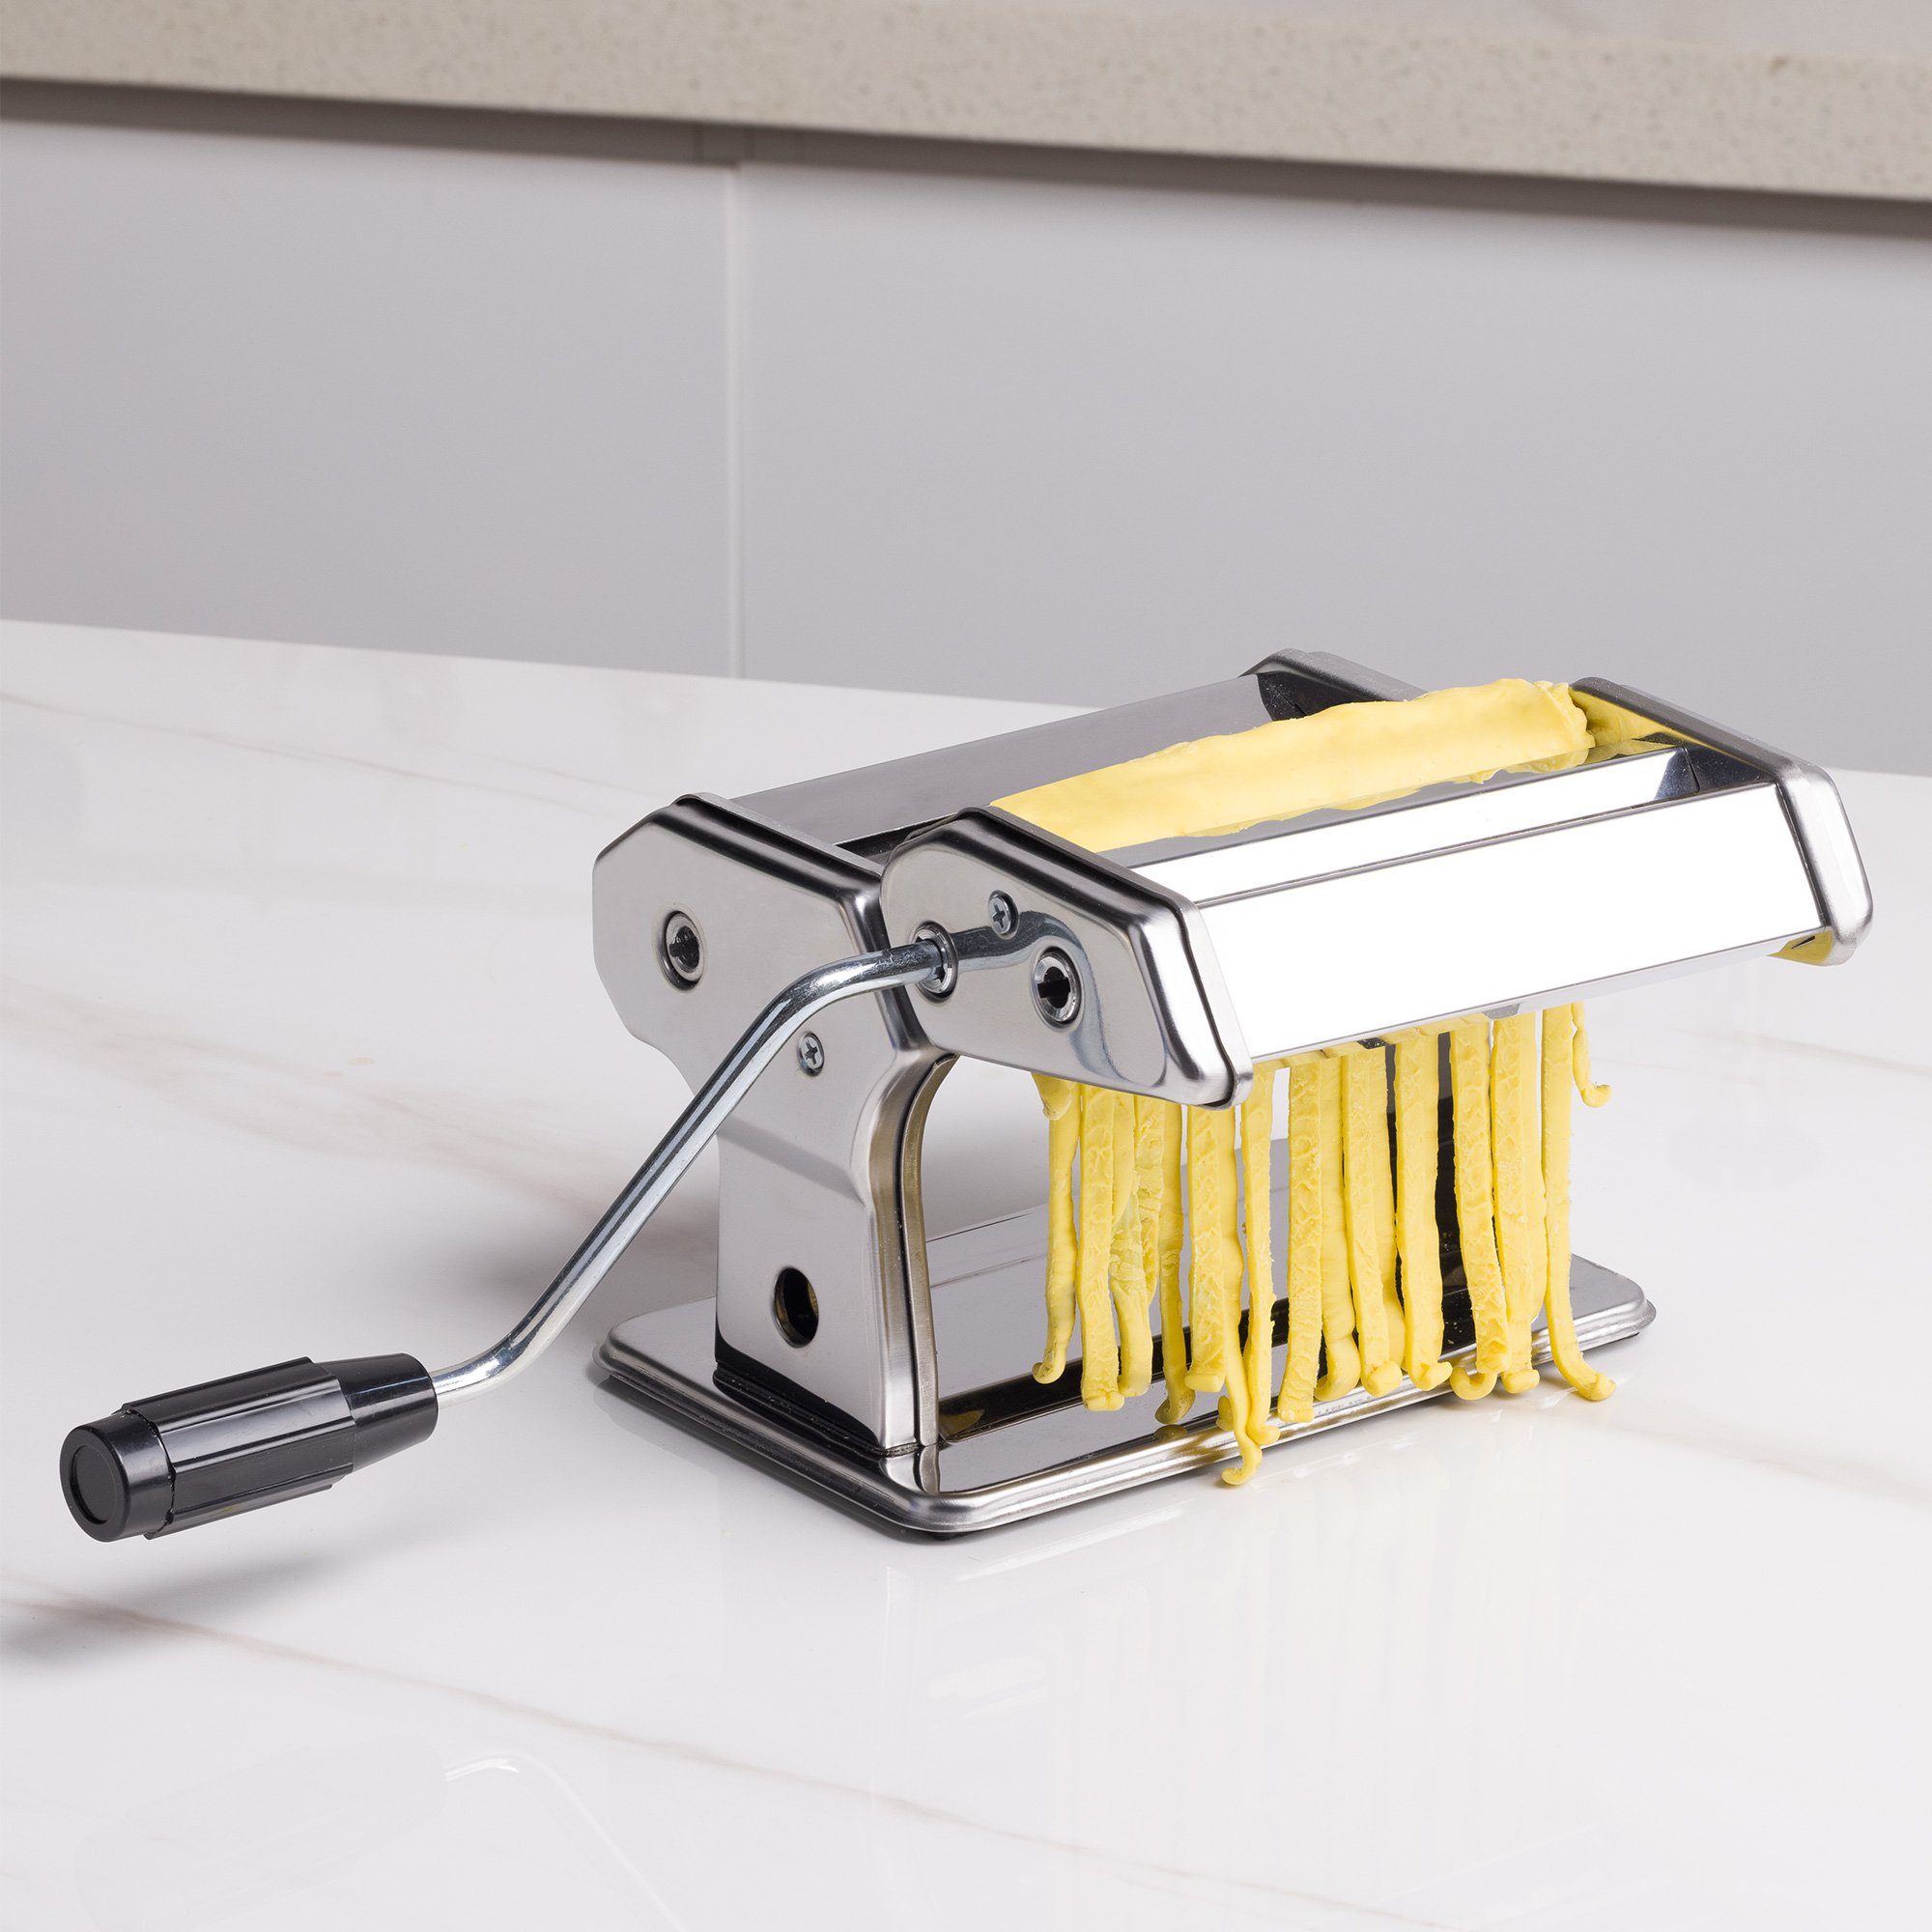 Navaris mit für Spaghetti - Nudelmaschine Maschine Holzgriff Pasta Pasta Maker Nudelmaschine